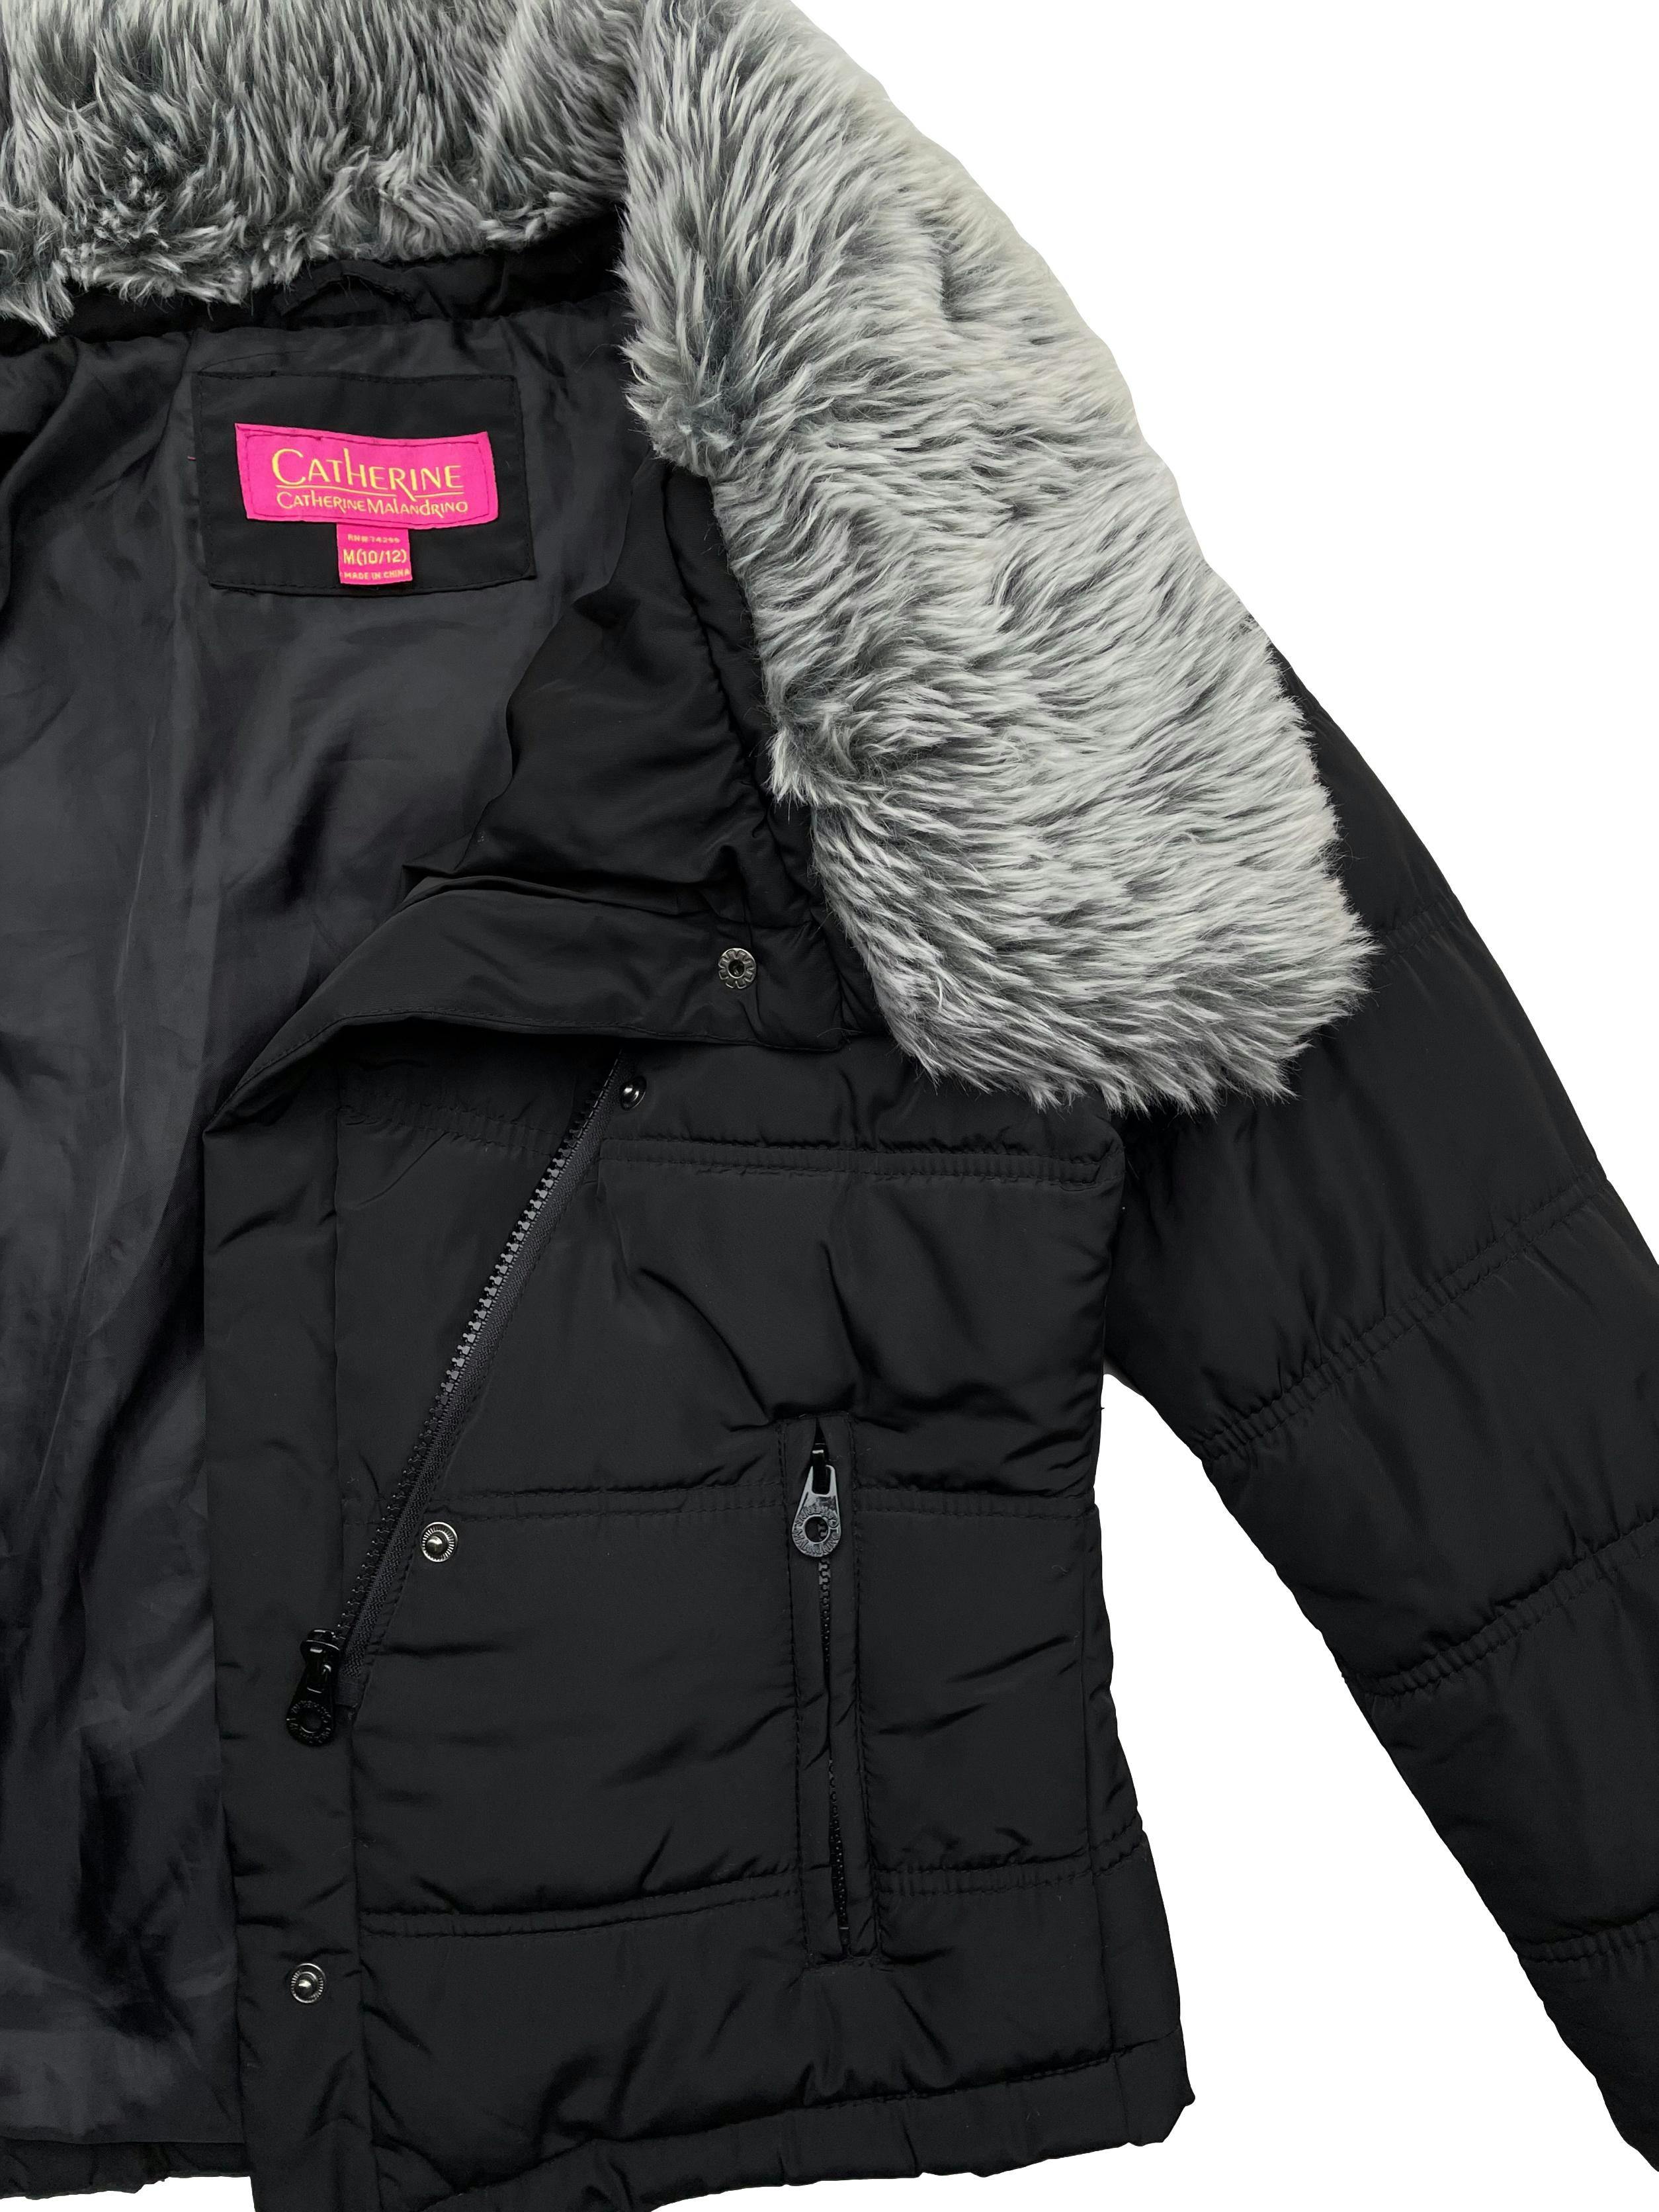 Puffer jacket negra Catherine Malandrino, cuello de peluche, con cierre, broches y bolsillos. Busto 90cm, Largo 55cm. 